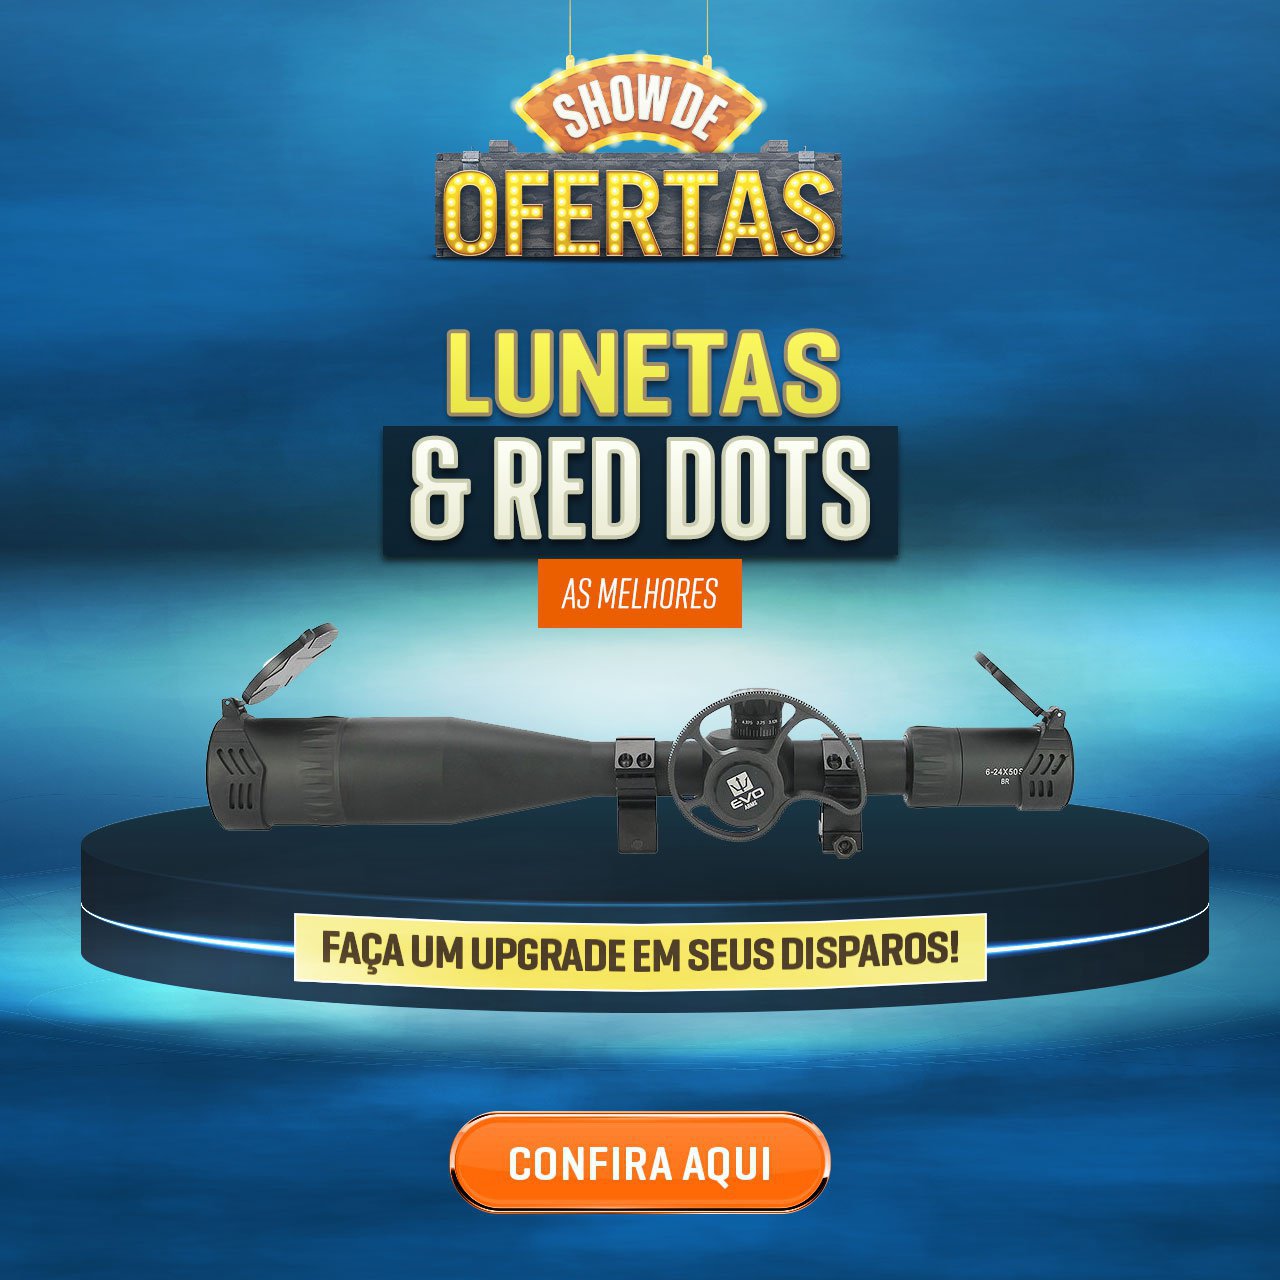 As melhores Lunetas & Red Dots - Faça um upgrade em seus disparos!